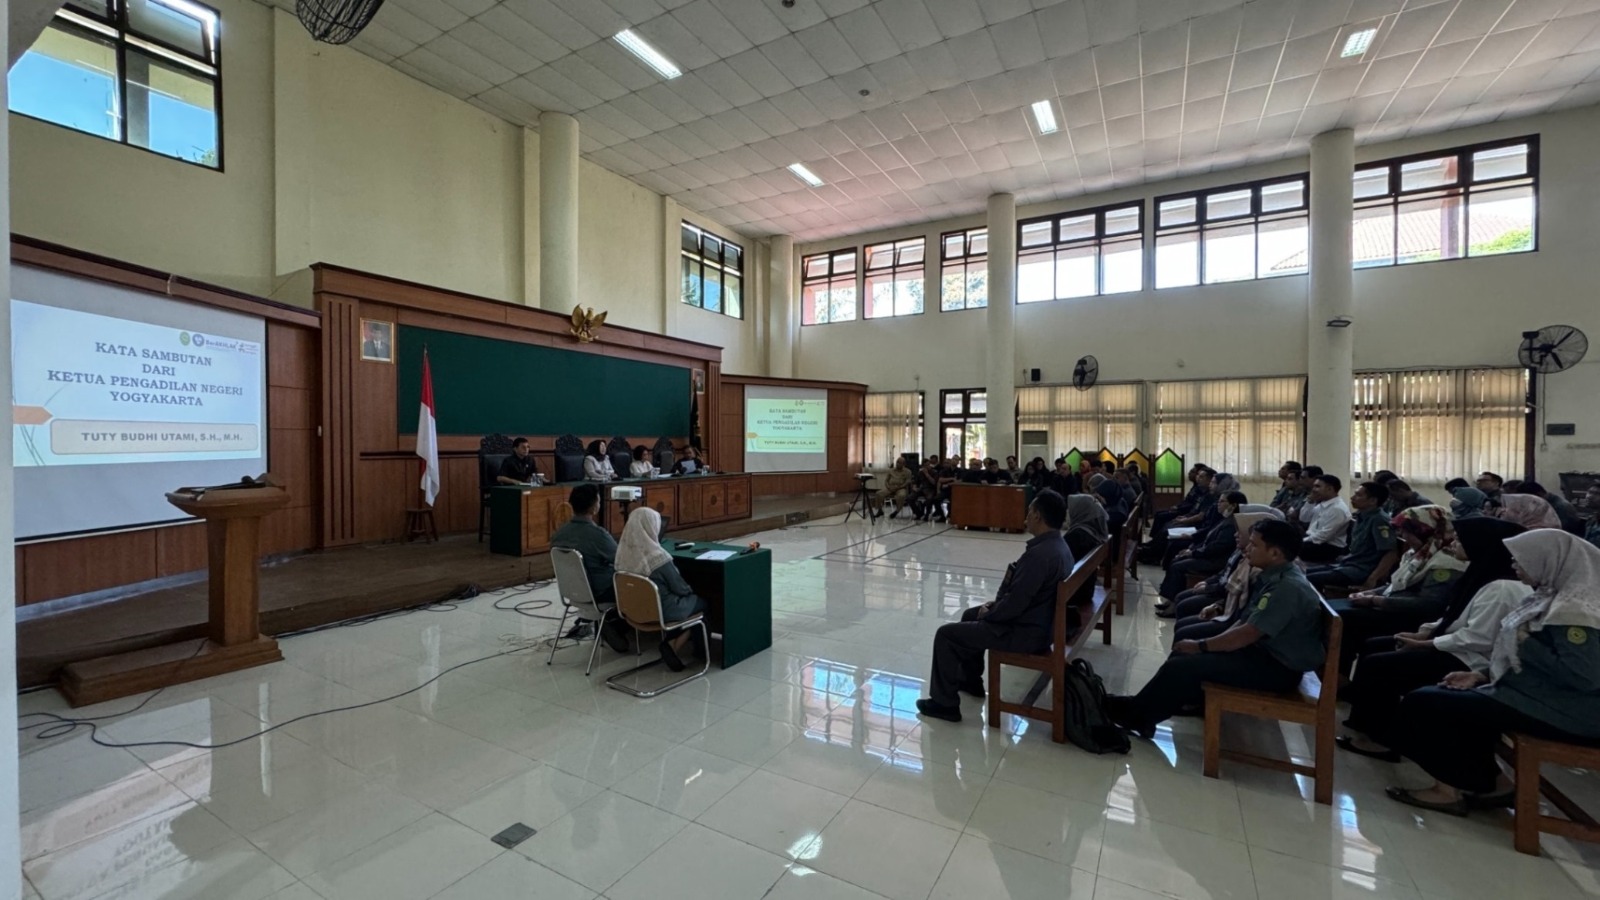 Pengawasan Daerah pada Pengadilan Negeri Yogyakarta oleh Pengadilan Tinggi Yogyakarta